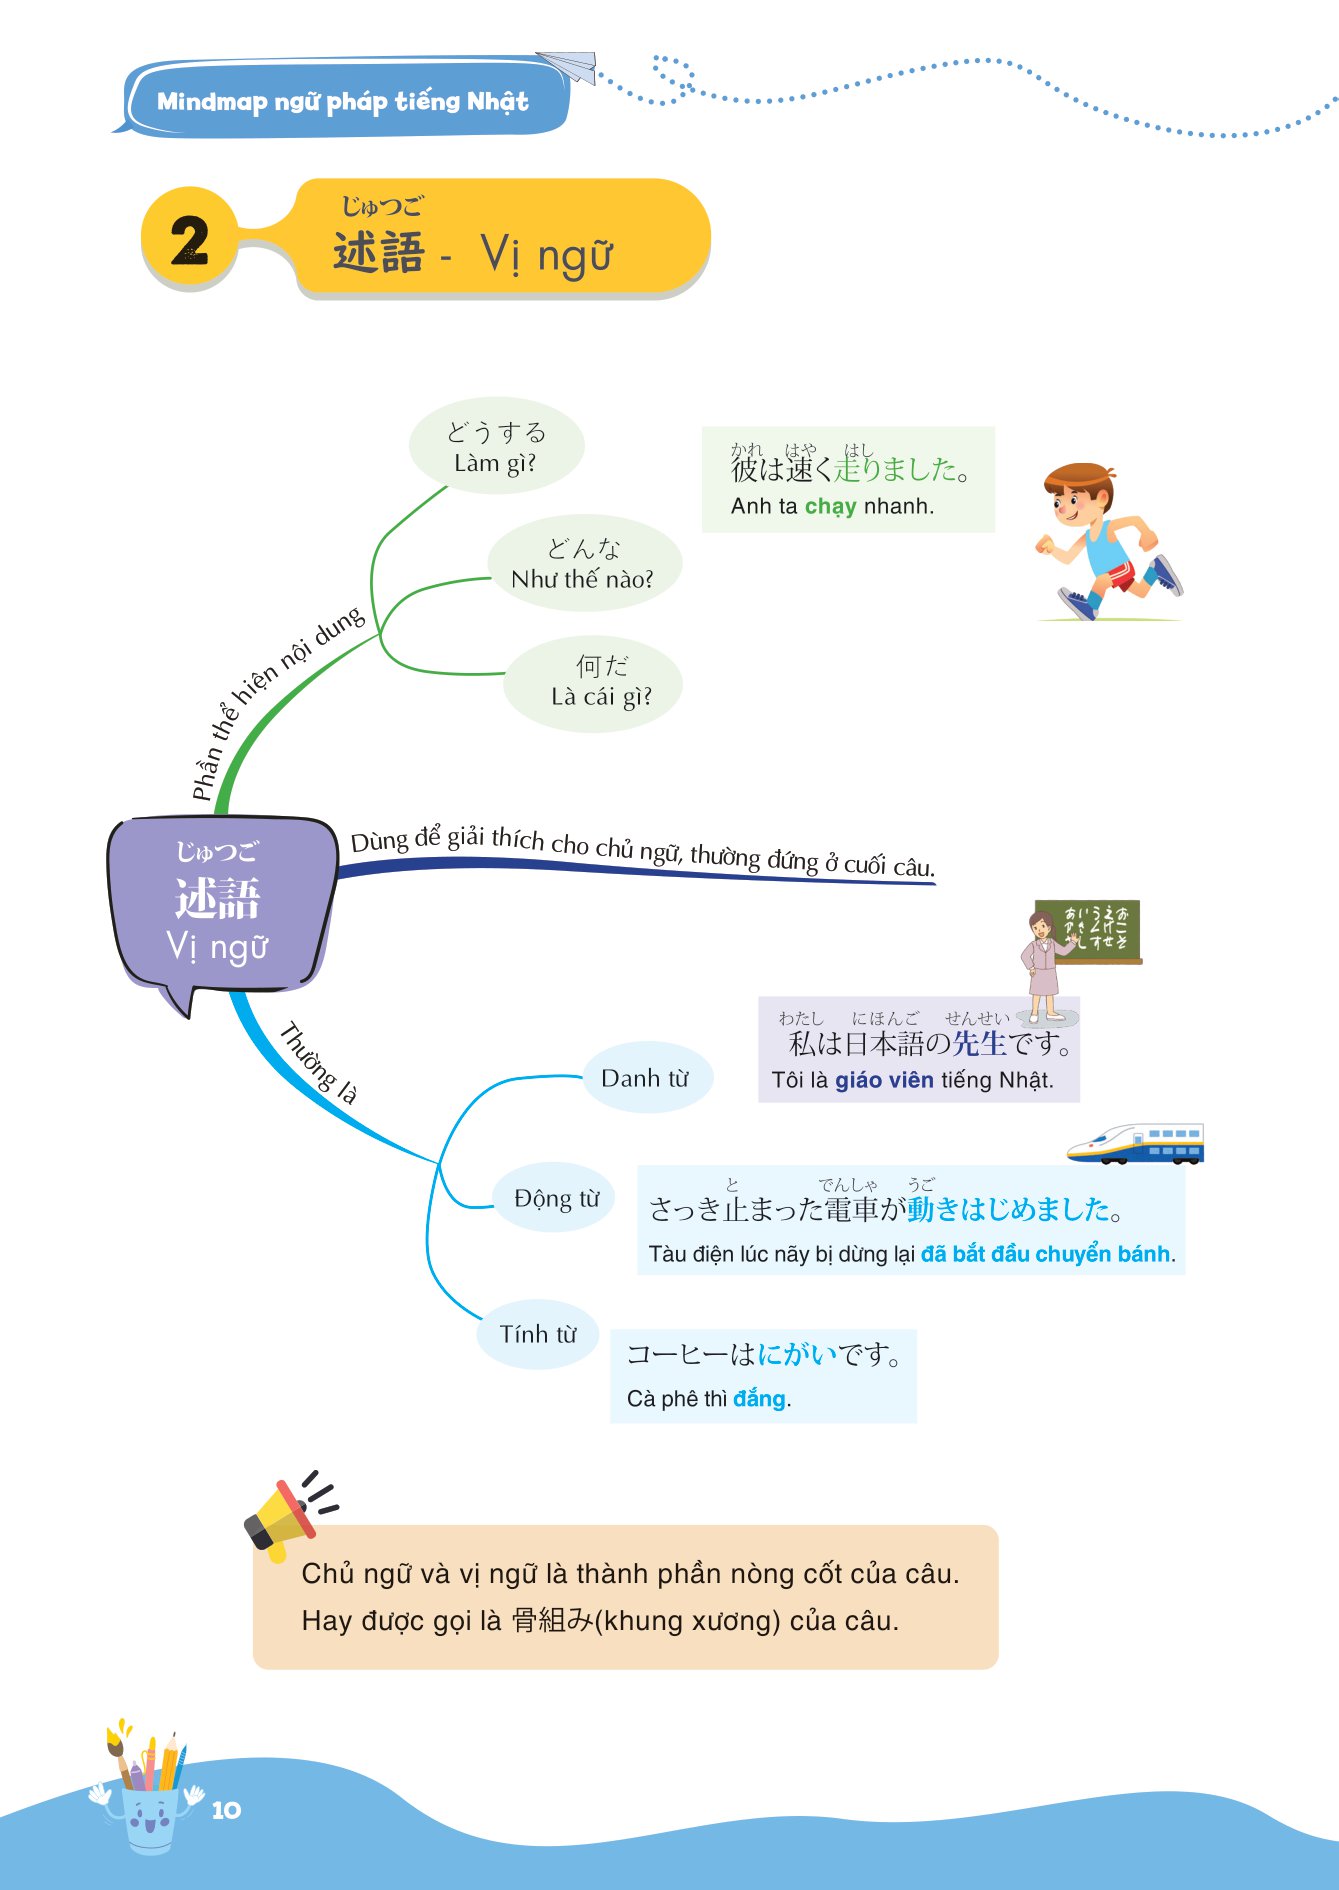 Mind Map Ngữ Pháp Tiếng Nhật - Học Ngữ Pháp Tiếng Nhật Qua Sơ Đồ Tư Duy_MC